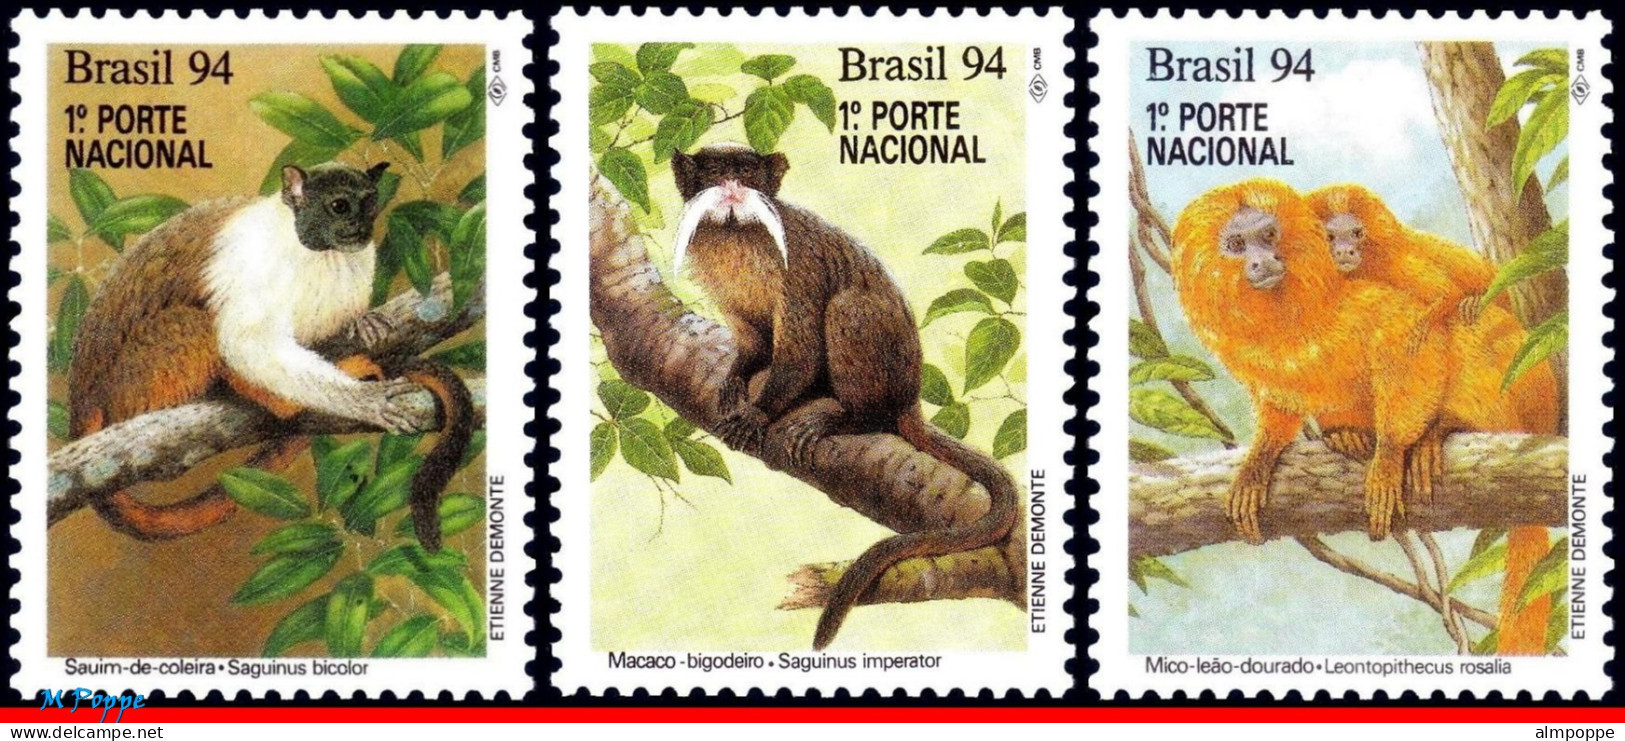 Ref. BR-2474-76 BRAZIL 1994 - MONKEYS, NATURE,PRESERVATION, MI# 2589-2591, SET MNH, ANIMALS, FAUNA 3V Sc# 2474-2476 - Nuovi